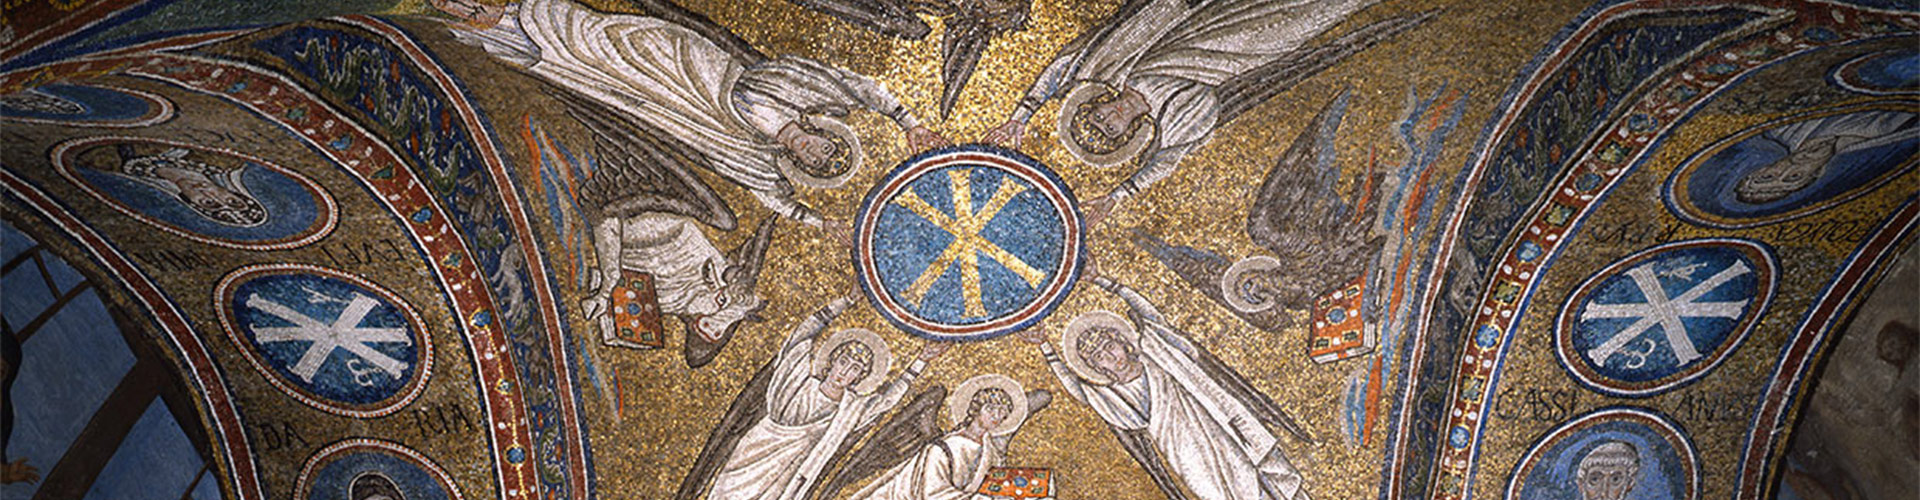 Ravenna: la città dei mosaici e di Dante Alighieri!